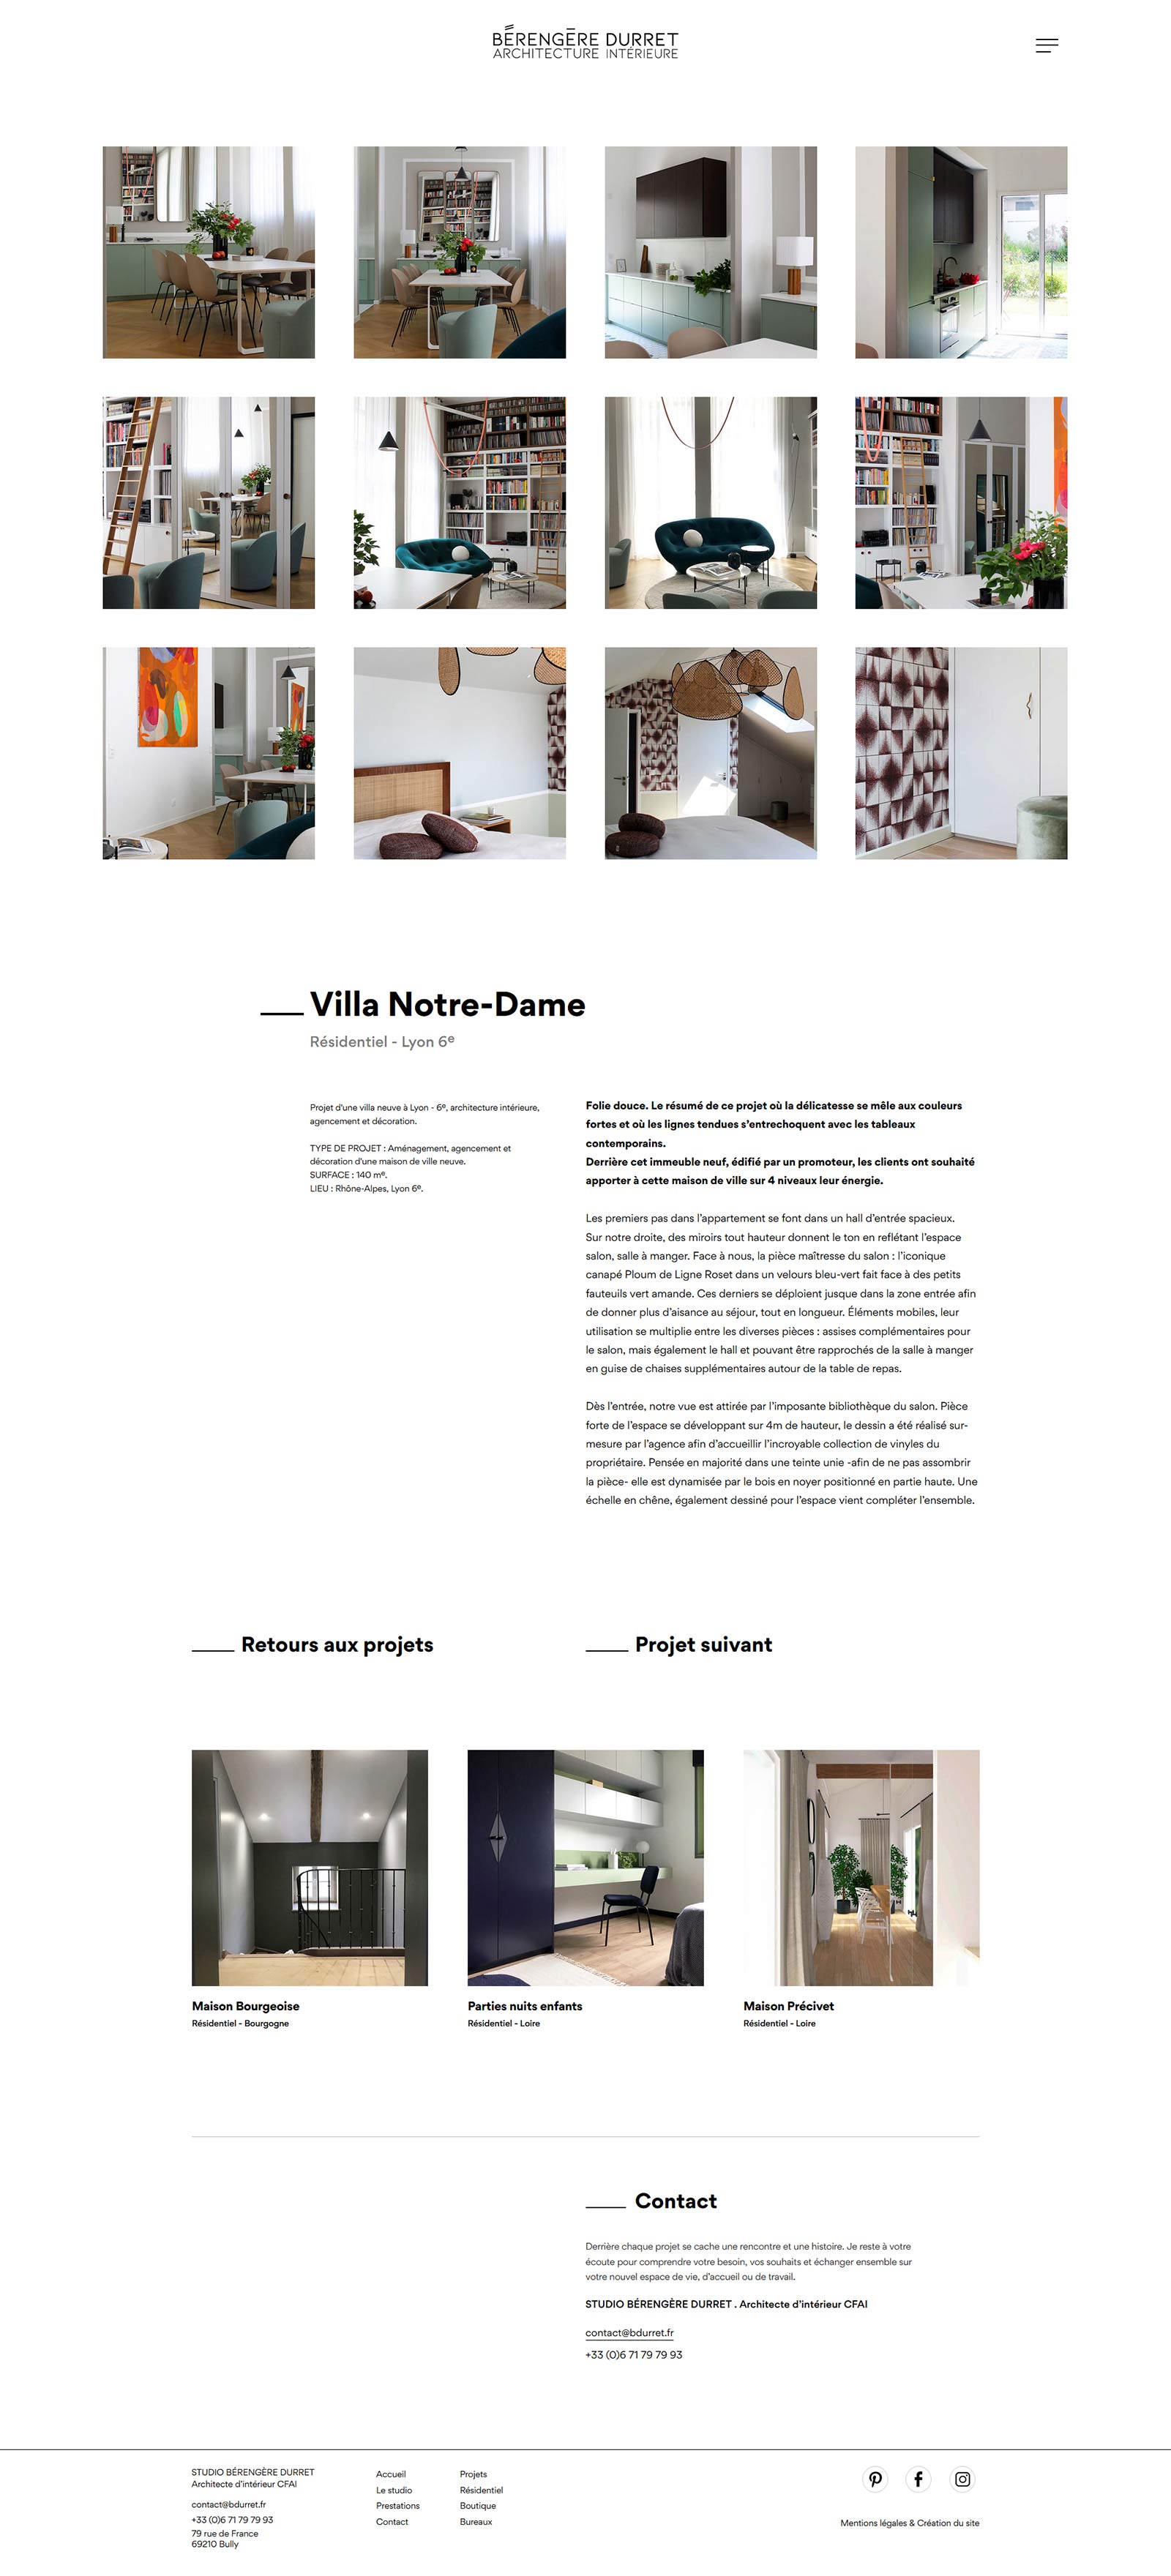 Création du site internet de Bérengère Durret, architecte d'intérieur à Lyon, par Hervé Augoyat